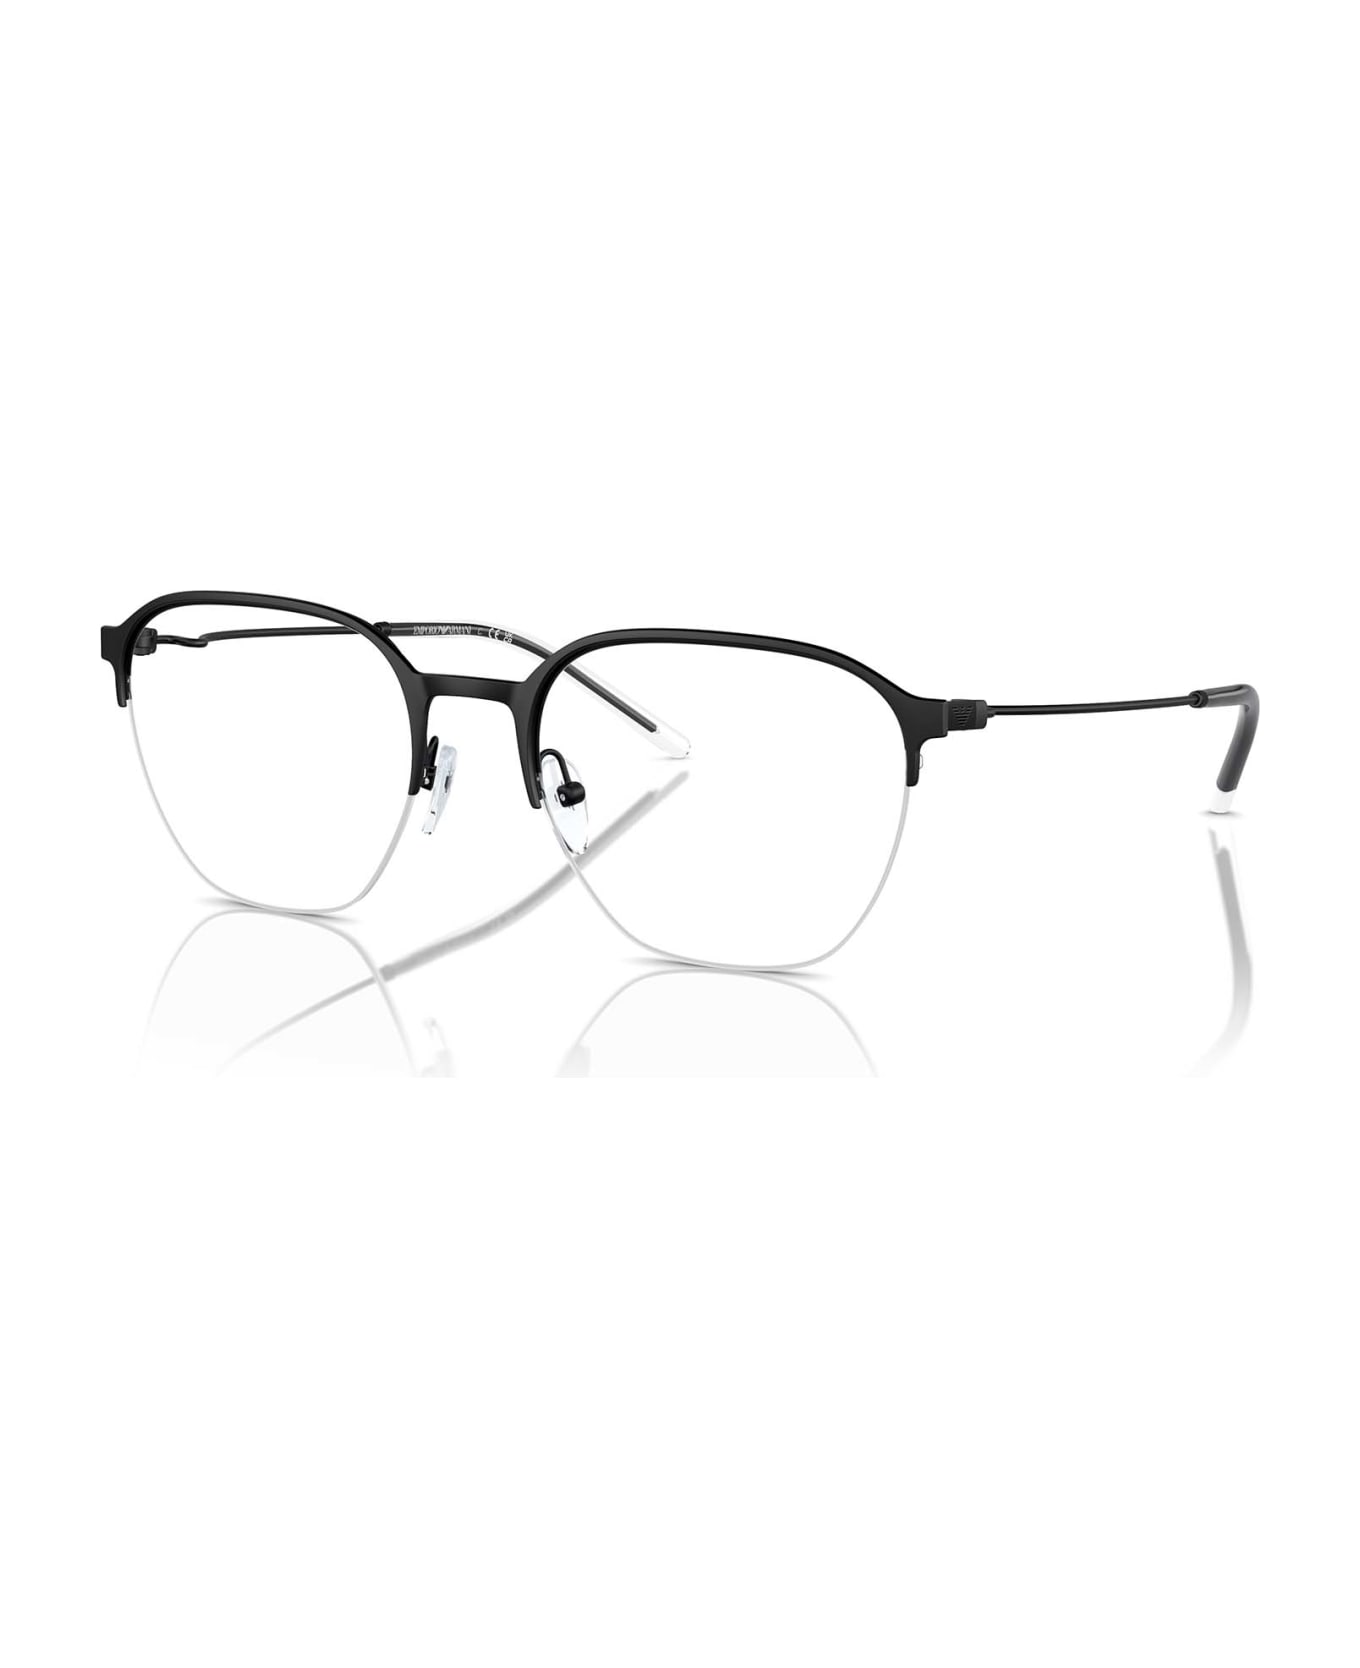 Emporio Armani Ea1160 Matte Black Glasses - Matte Black